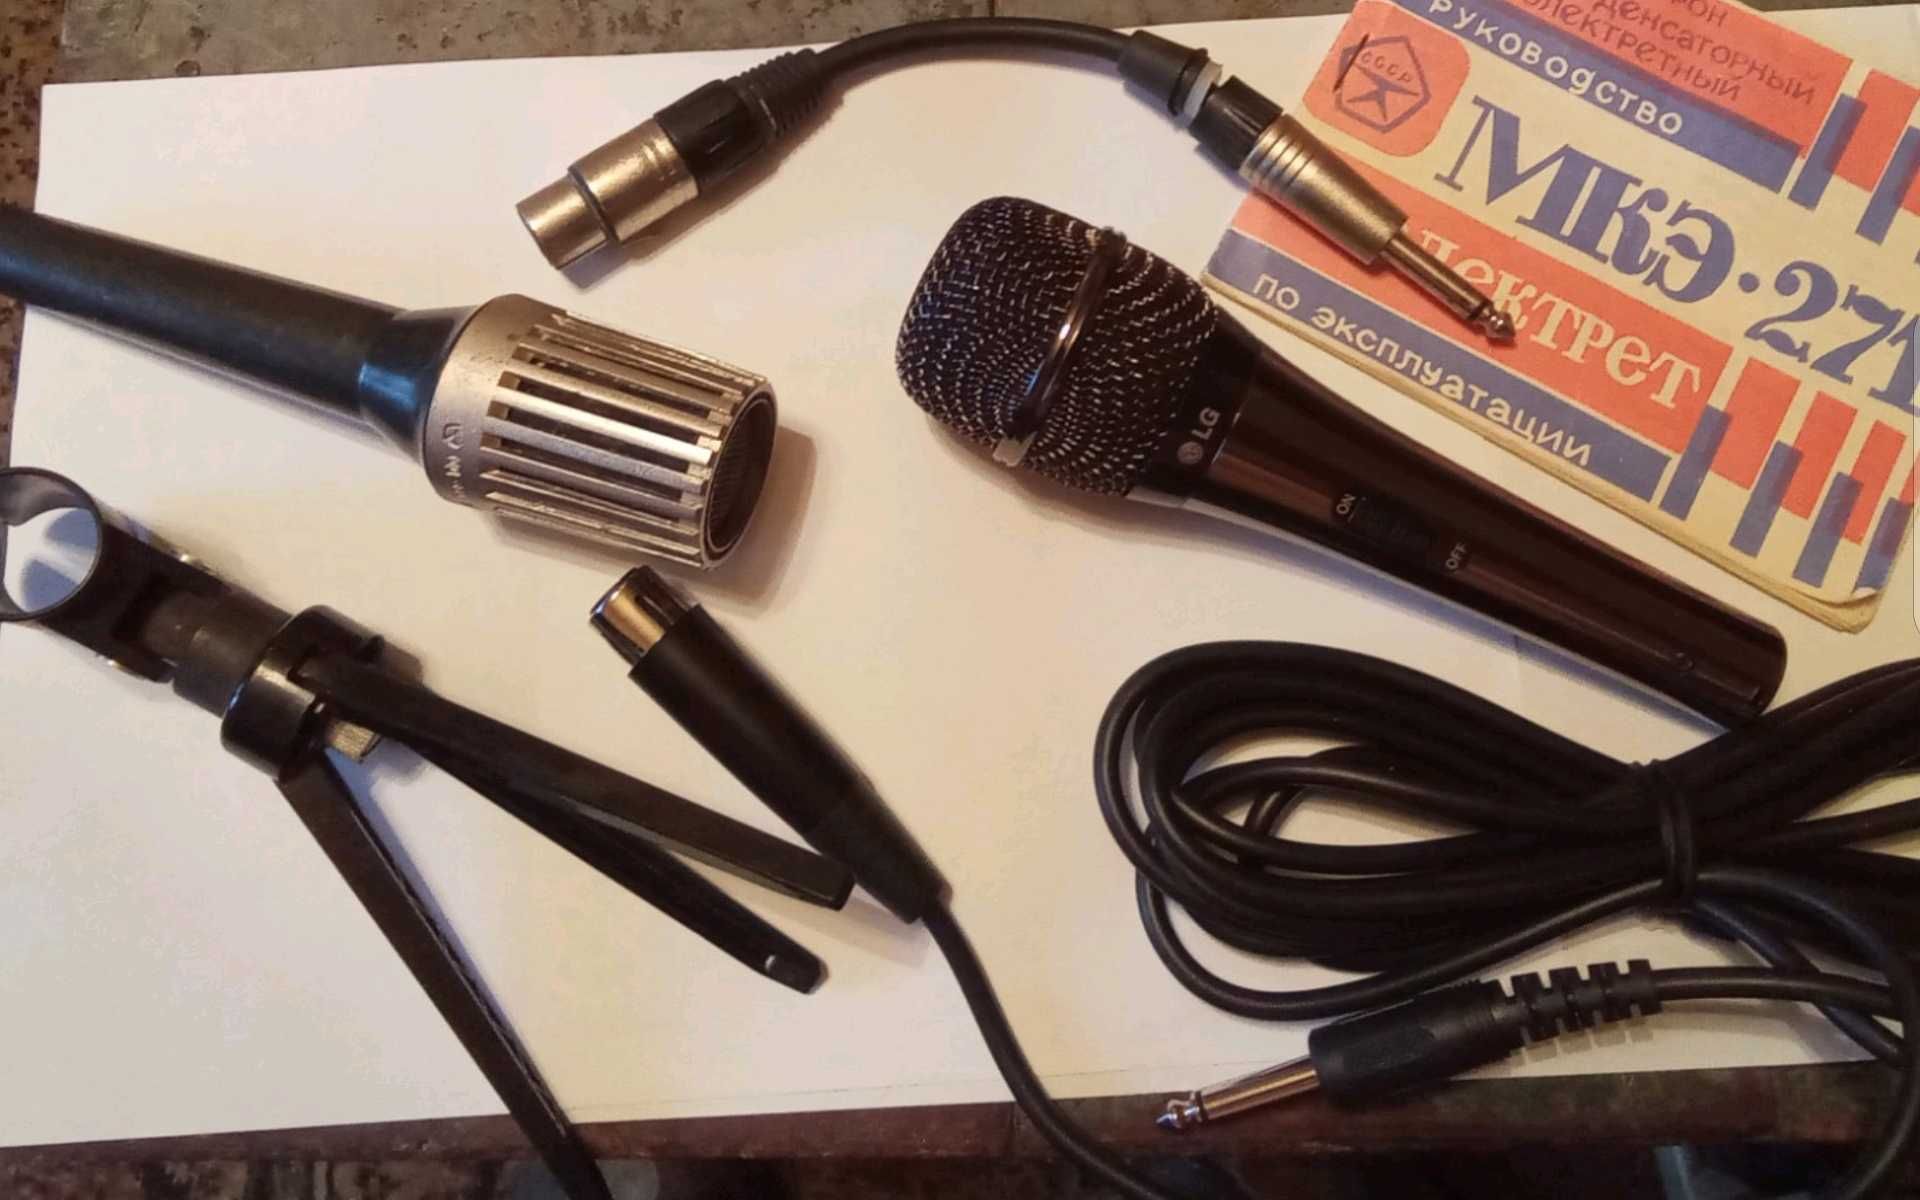 Стойка,микрофон,LG,мд-80А, МКЭ-271,микрофонная,настольная,на микрофон.